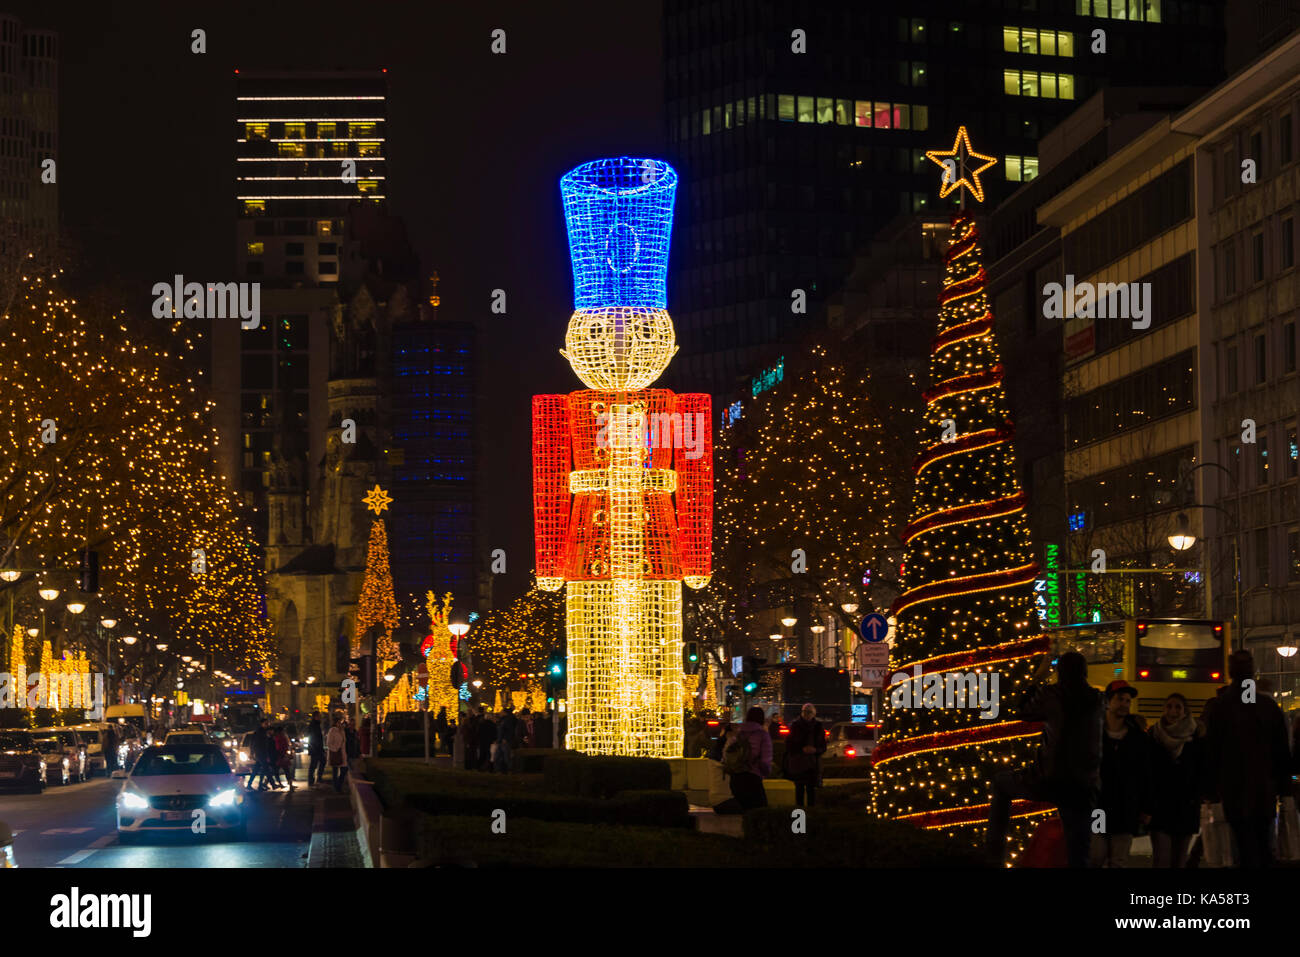 Le celebrazioni del Natale con la decorazione e illuminazione. bellissimo albero di natale. Foto Stock